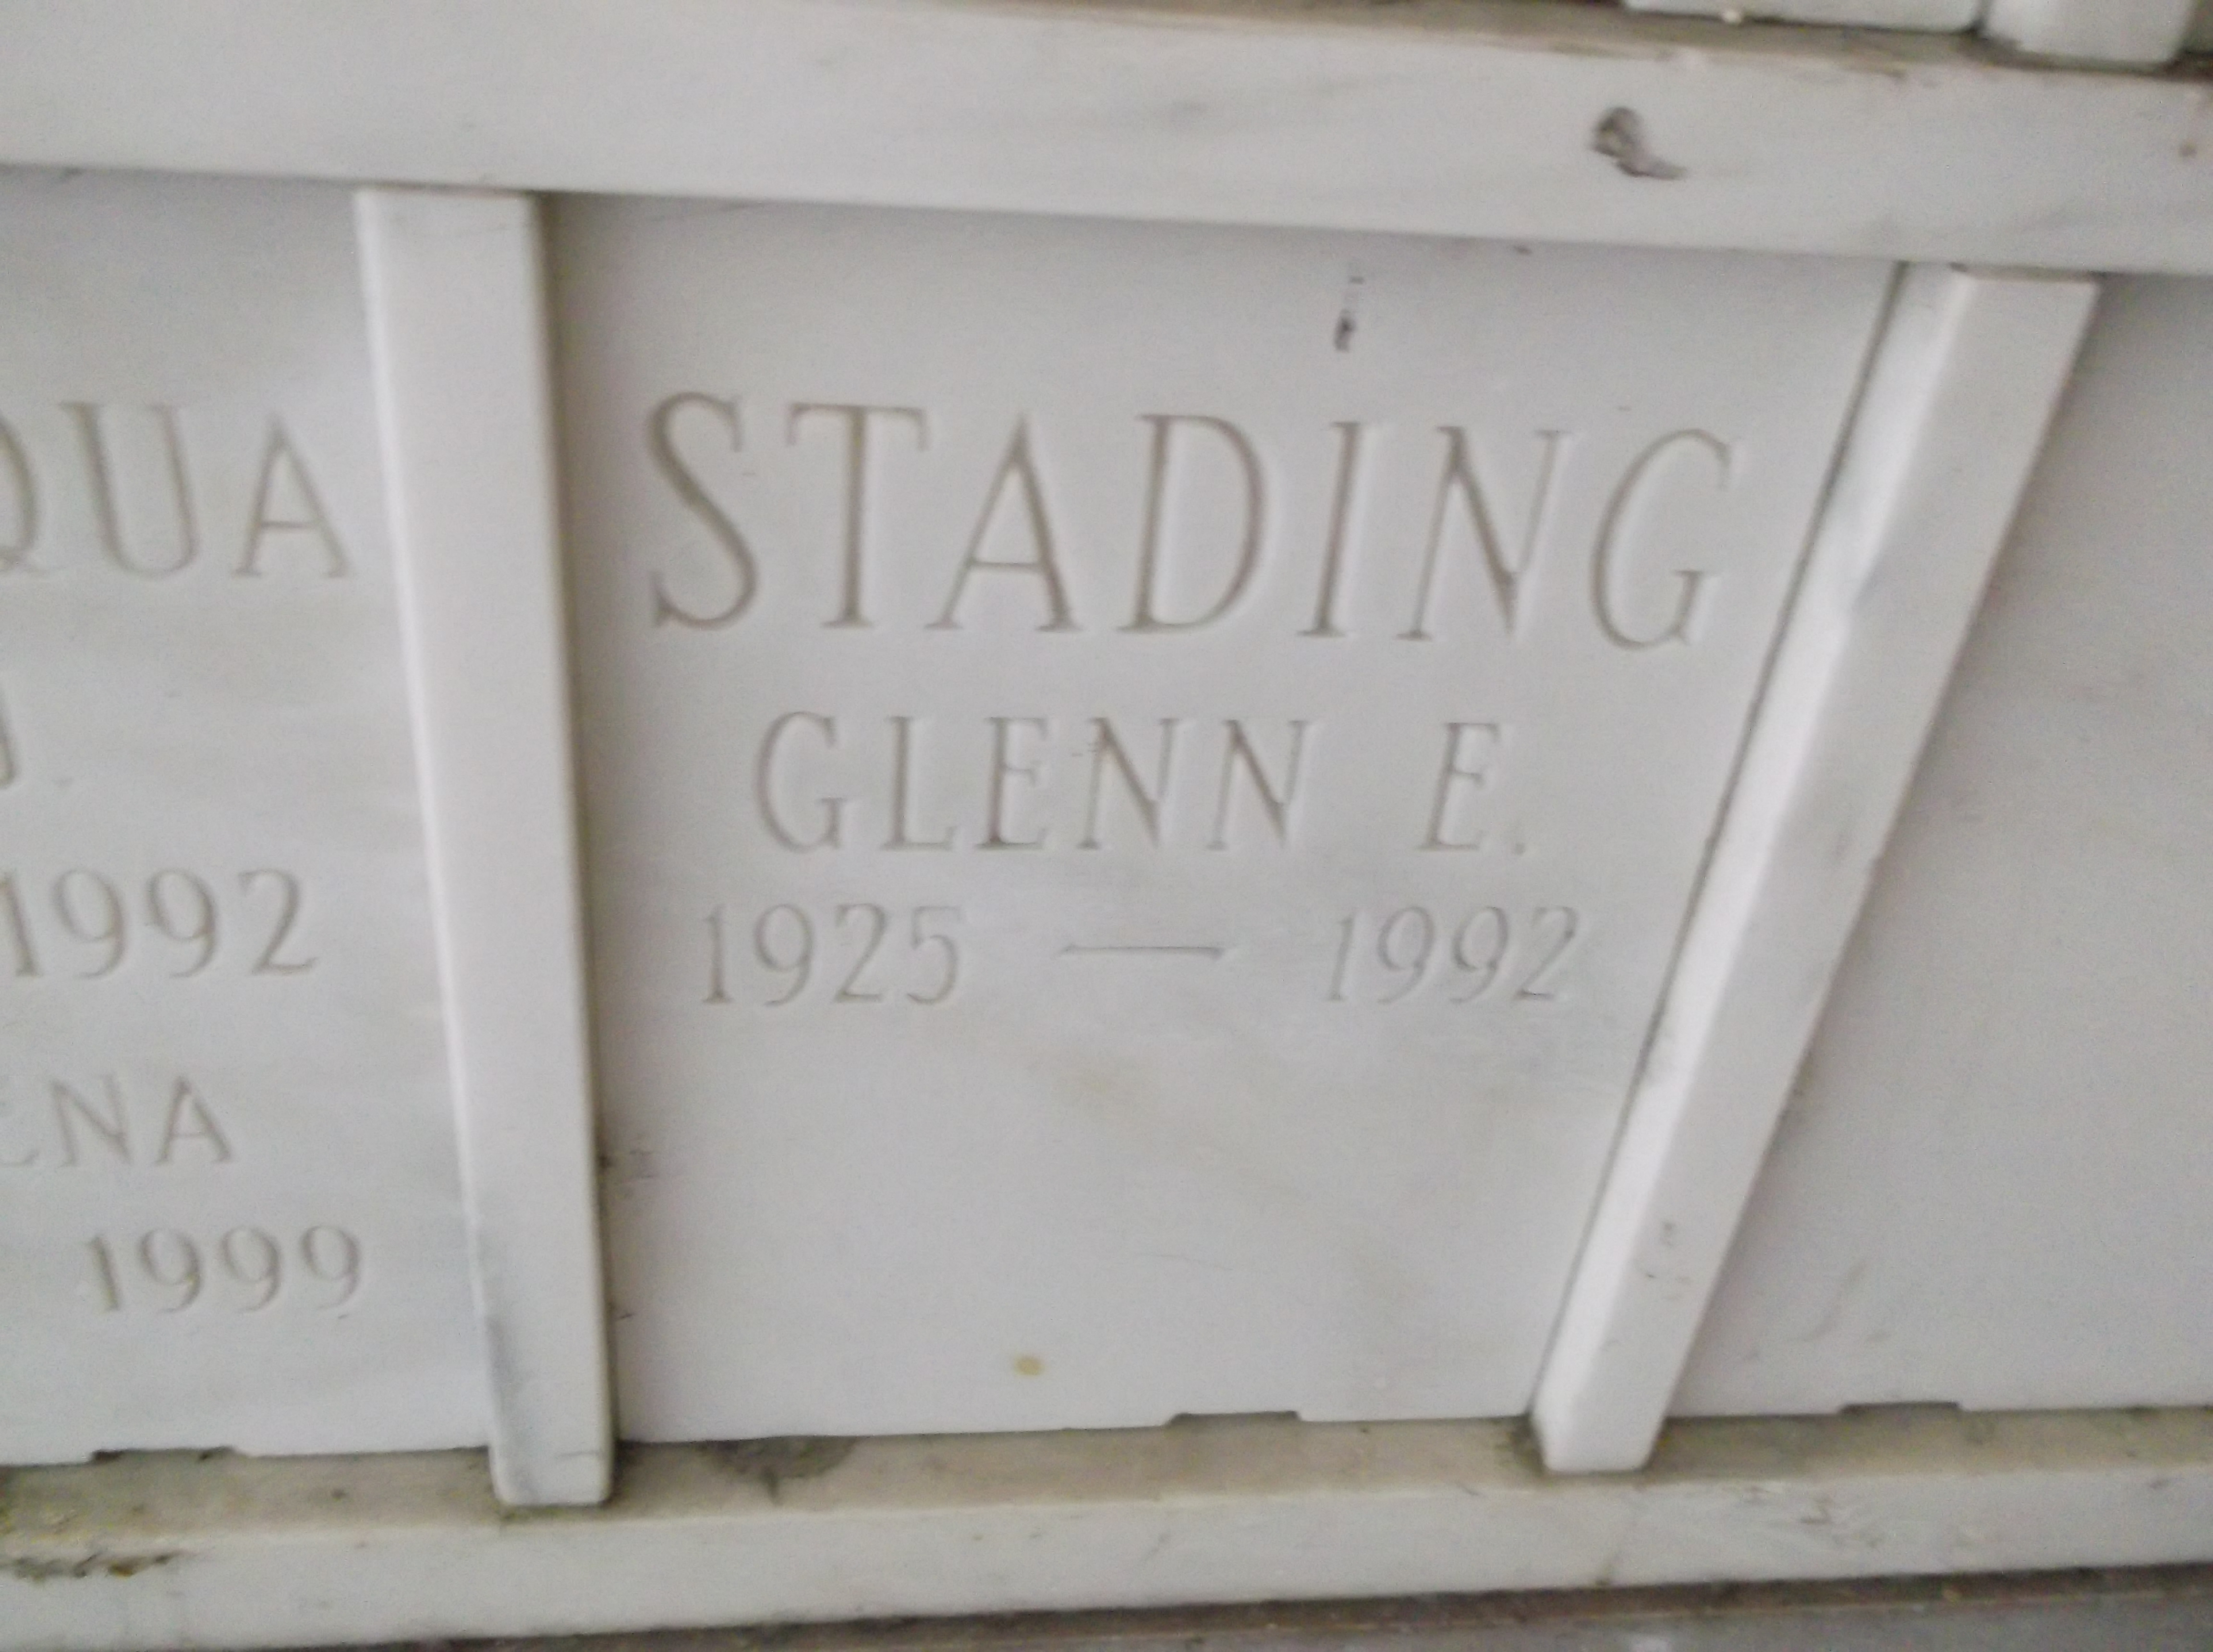 Glenn E Stading